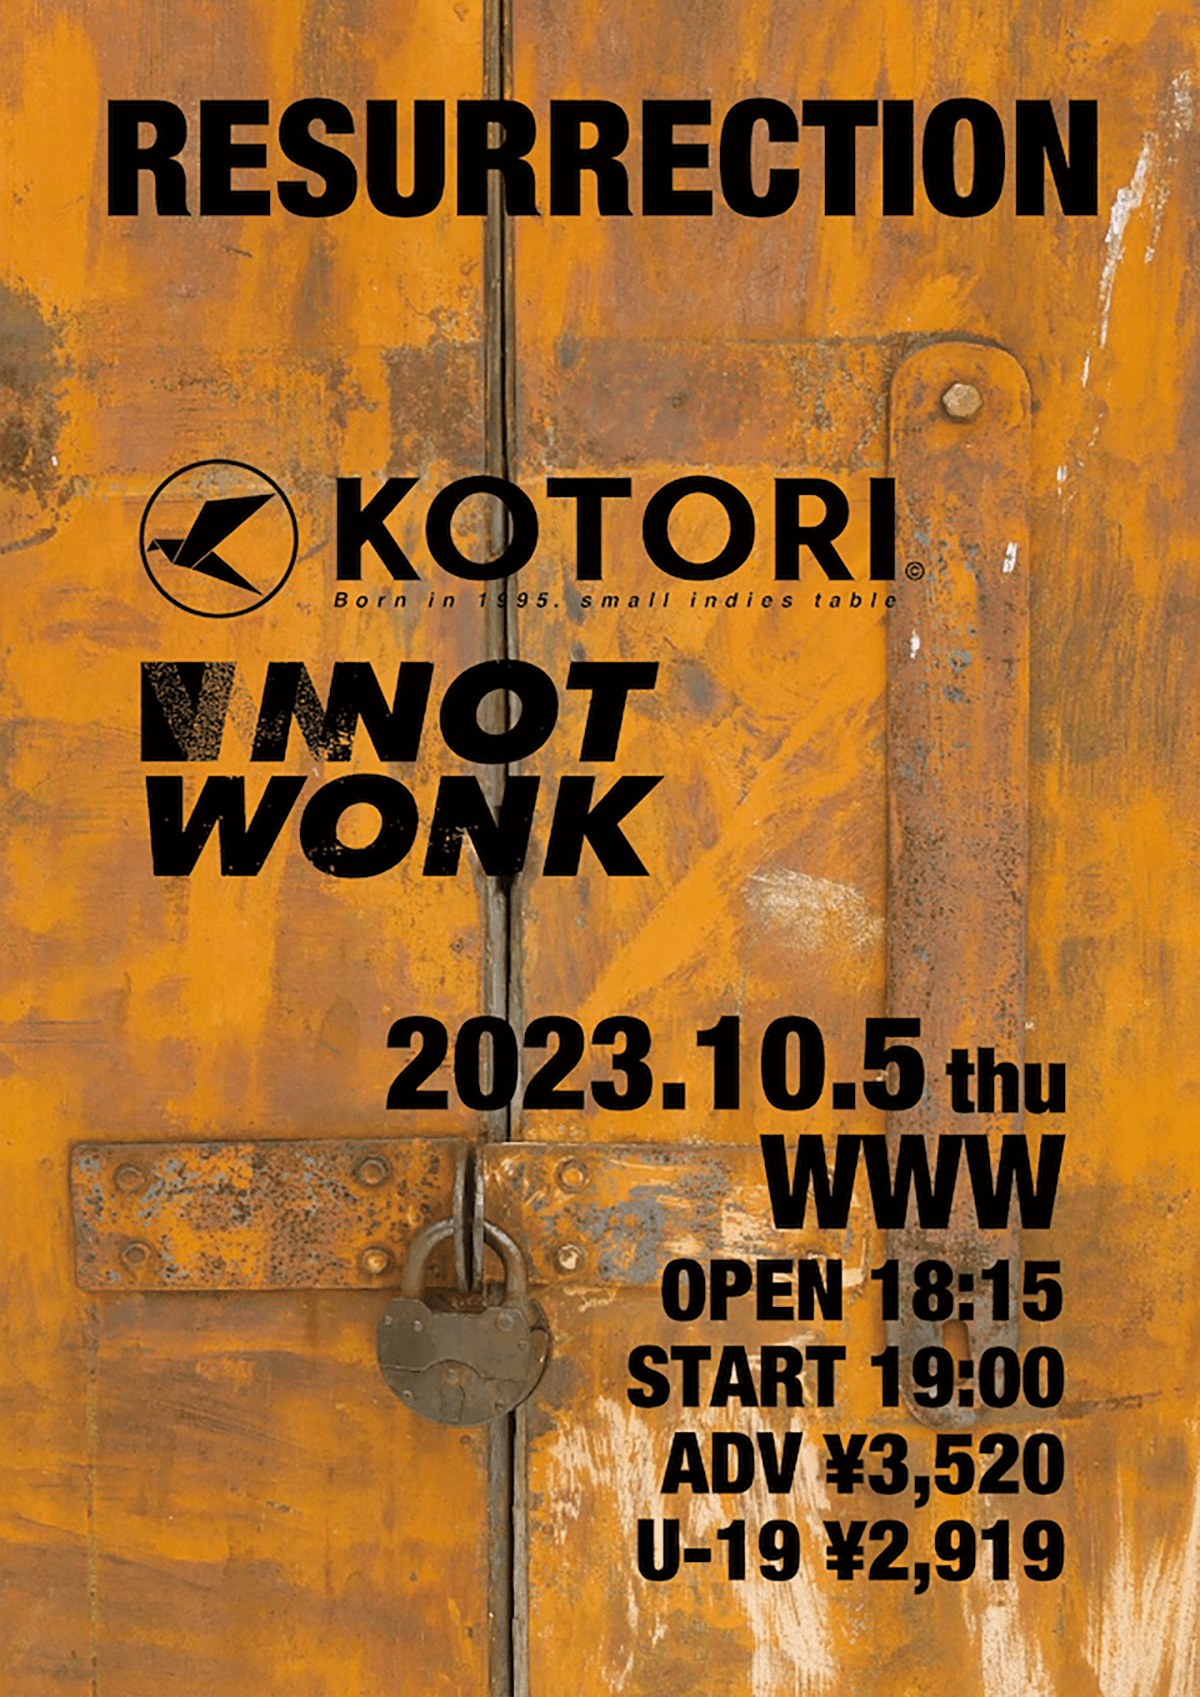 KOTORI / NOT WONK